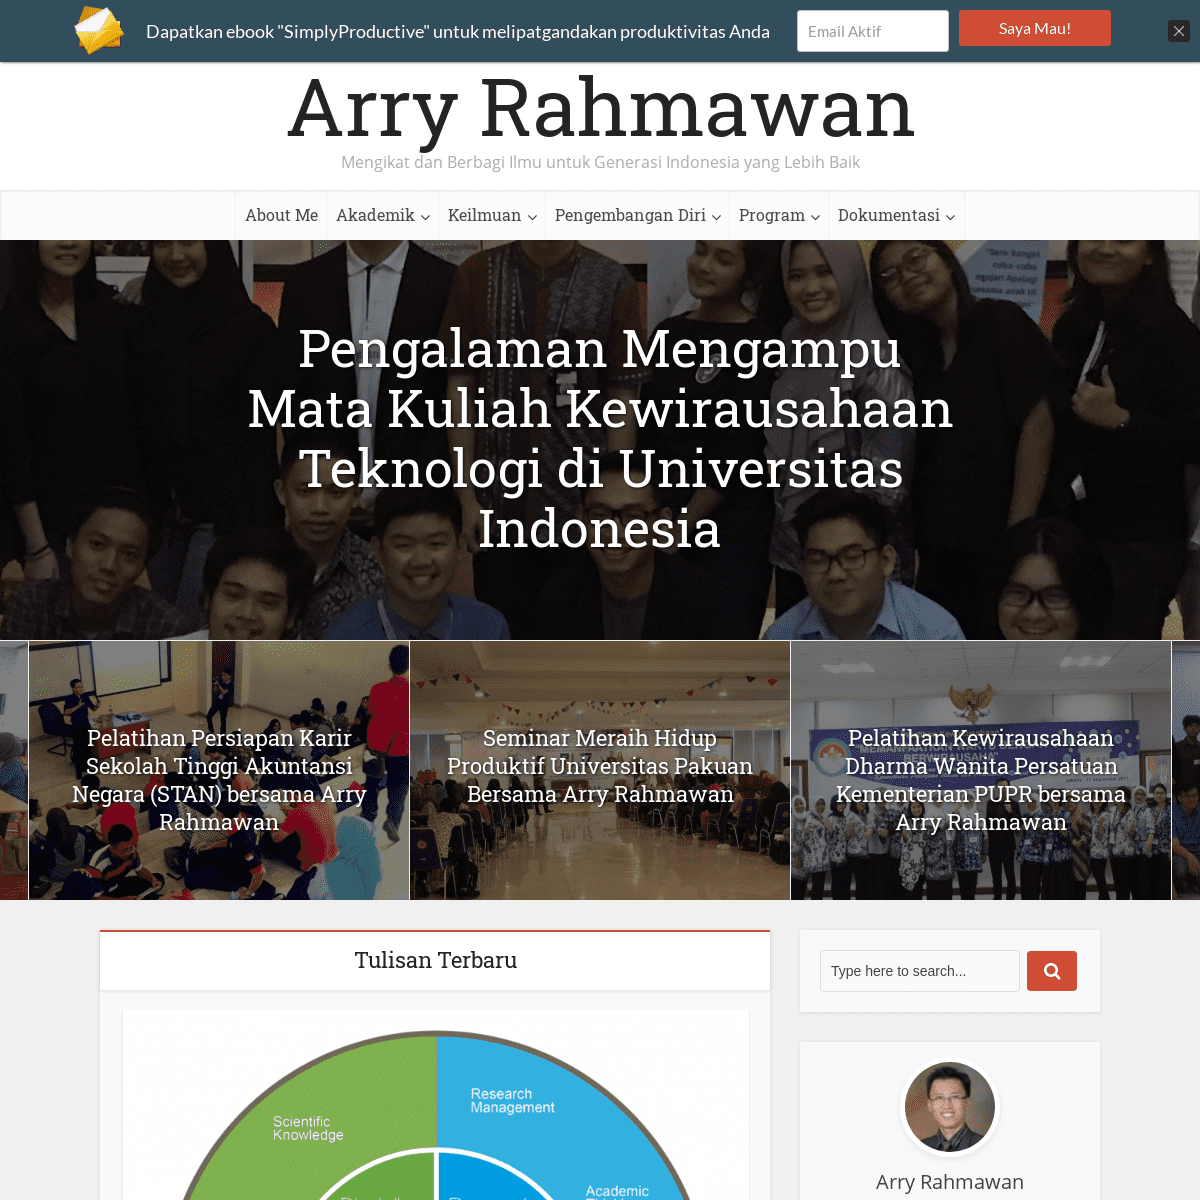 A complete backup of arryrahmawan.net